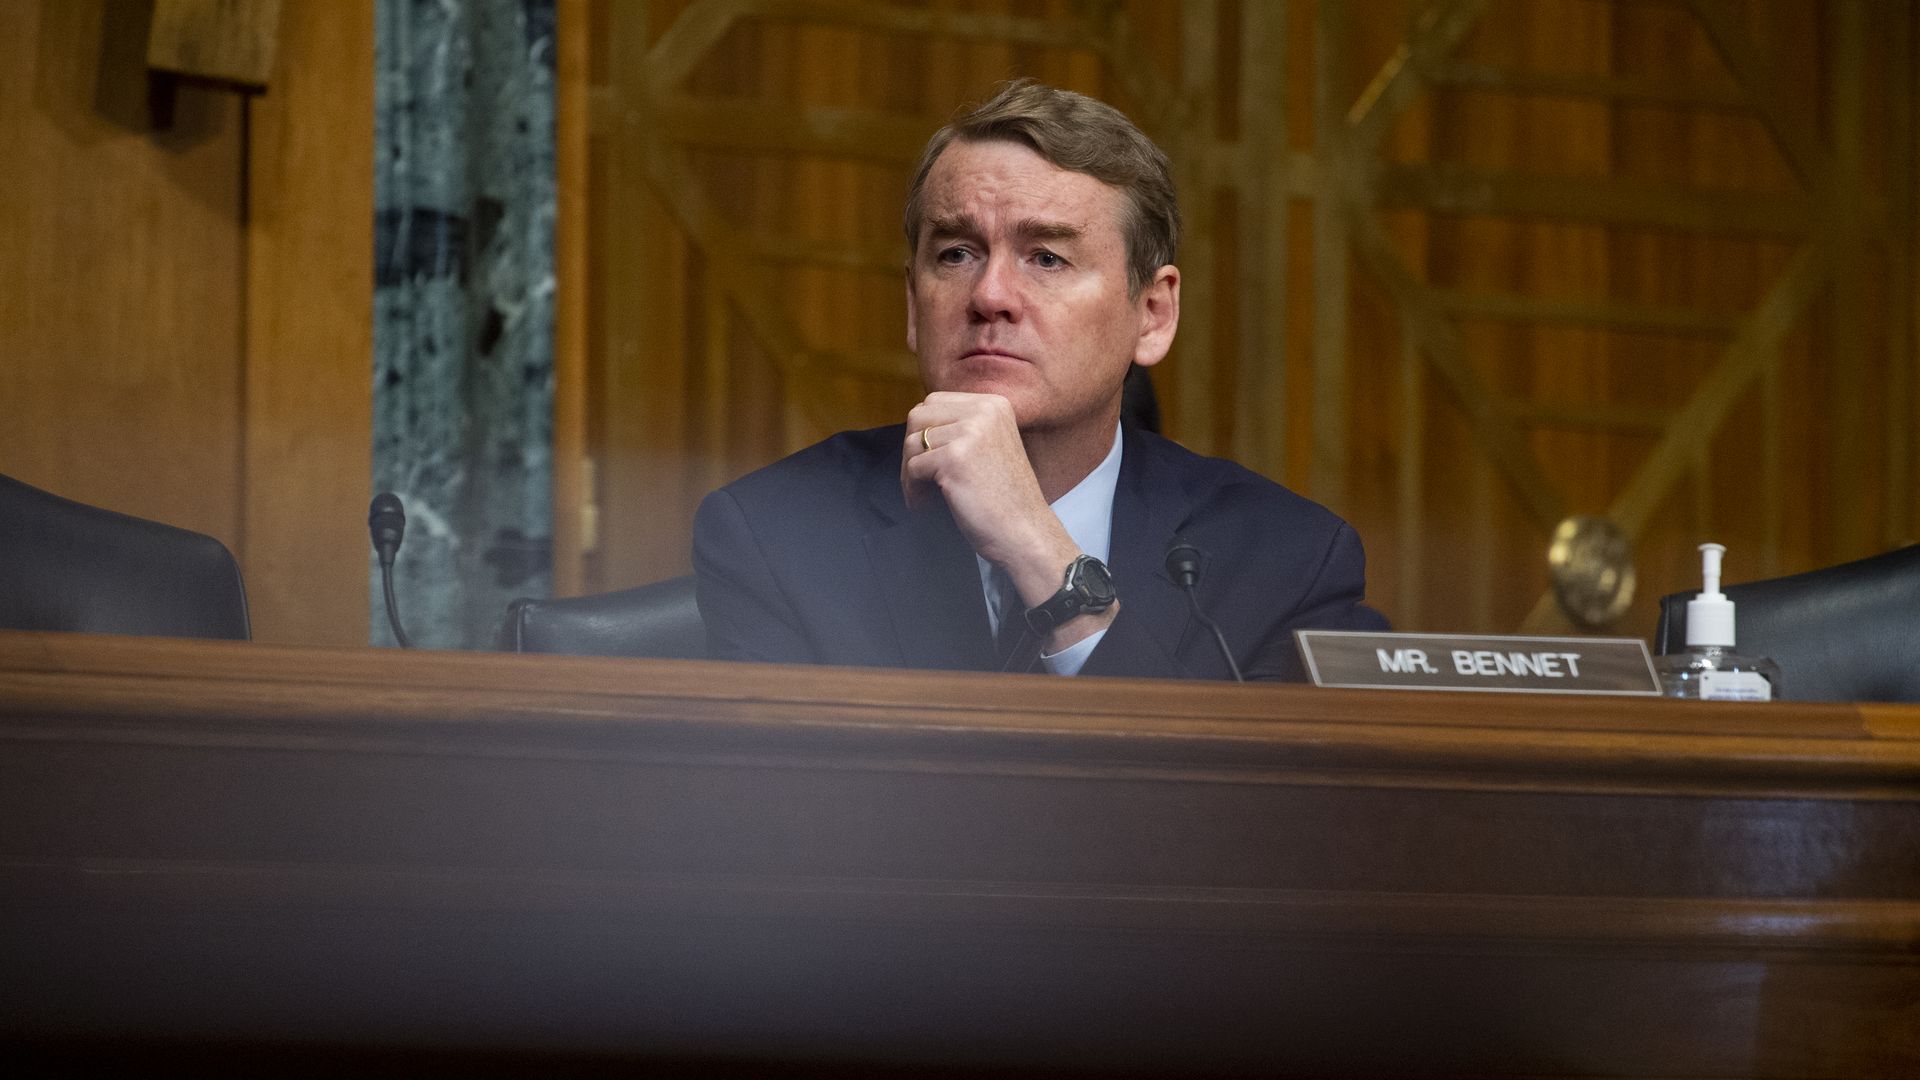 Sen. Michael Bennet is seen listening during a congressional hearing.